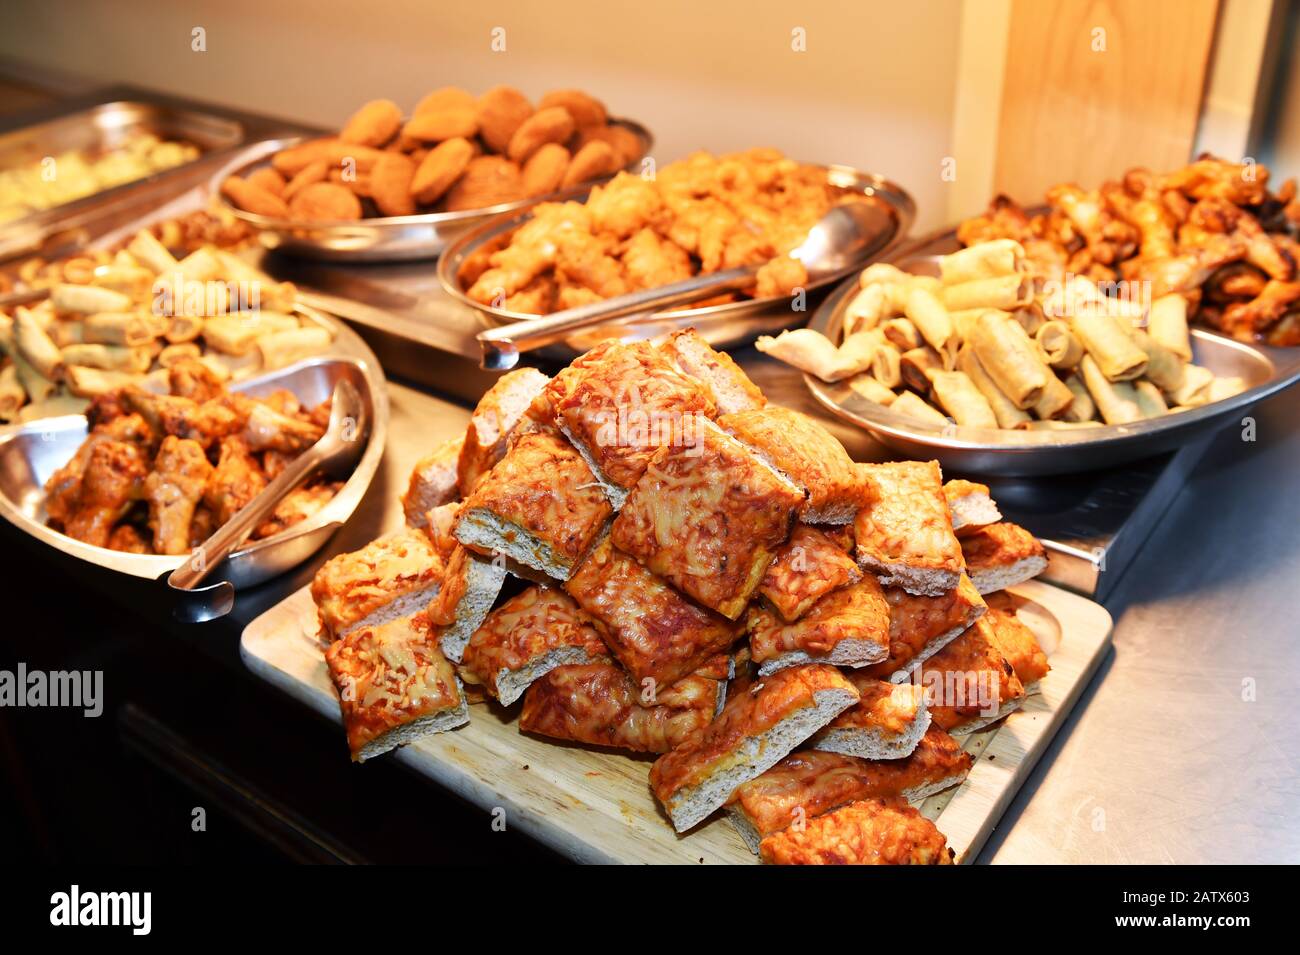 Buffet chaud de pizza et poulet frit au Royaume-Uni Banque D'Images